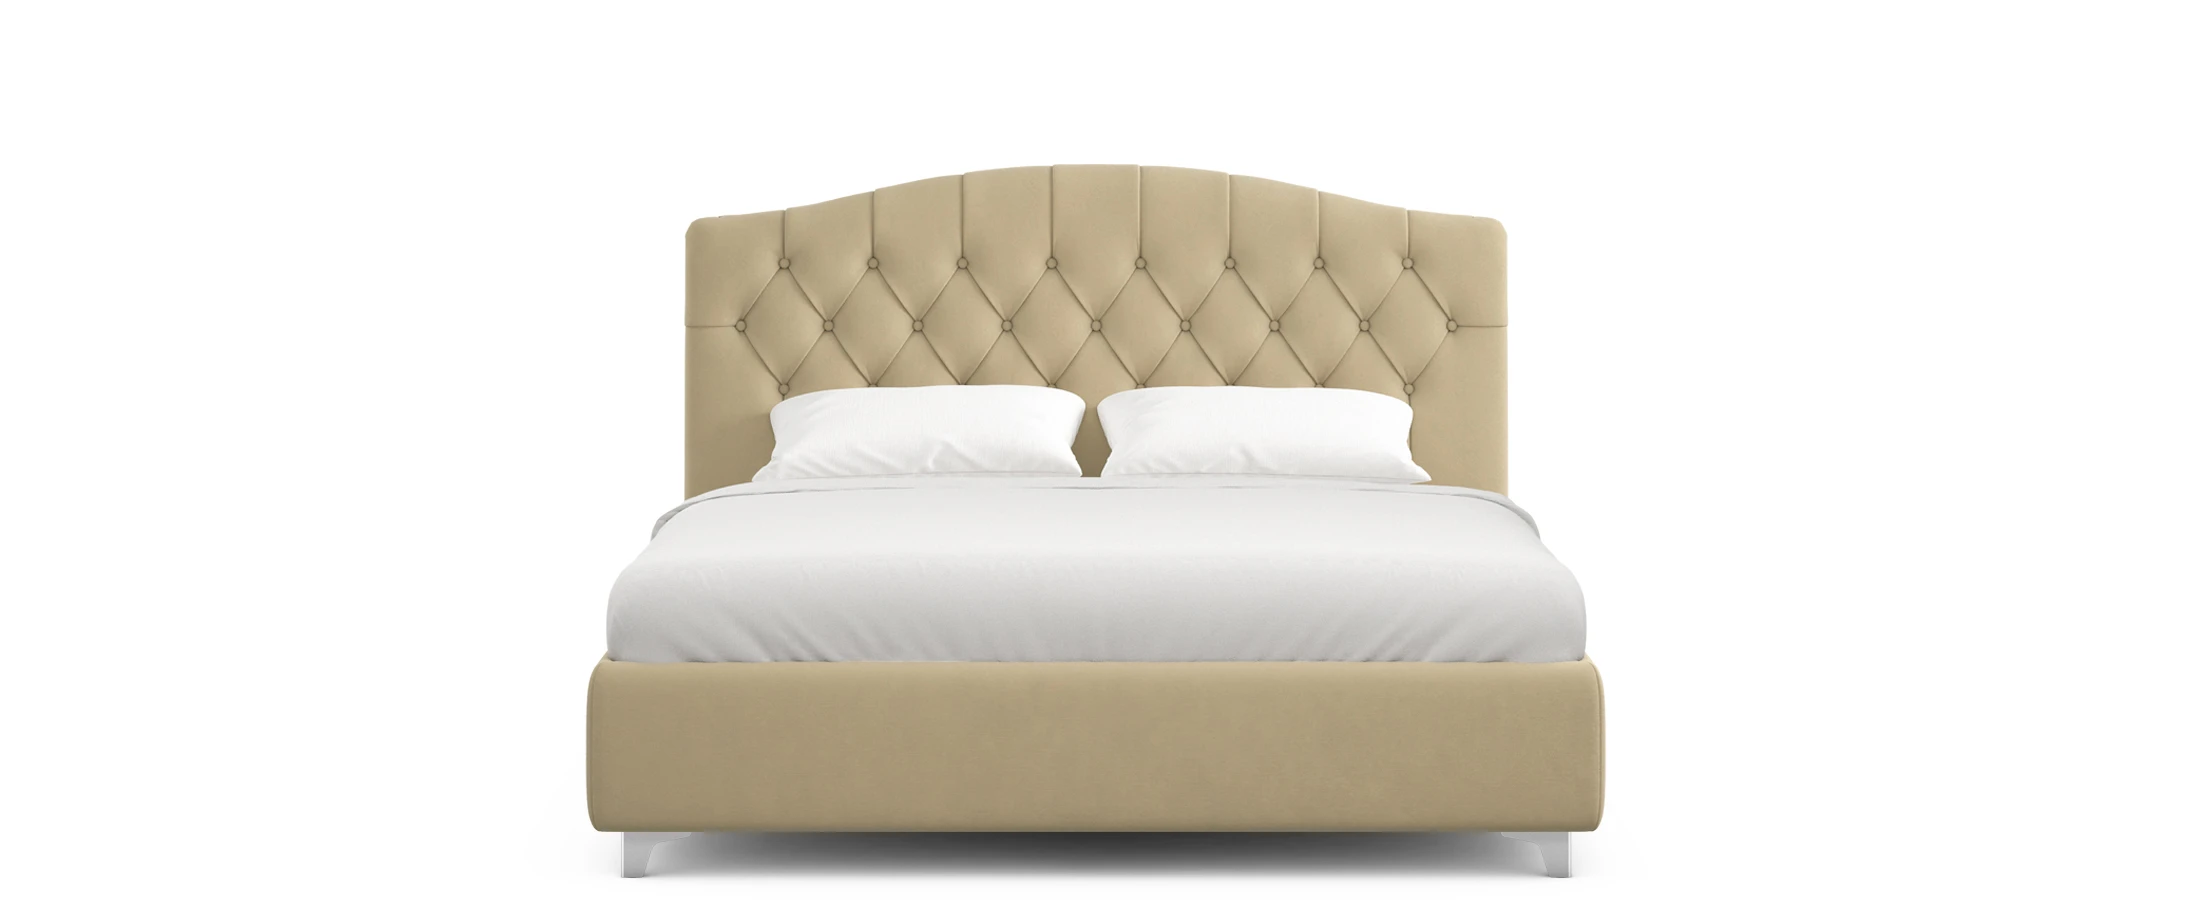 Кровать моон 1157 отзывы покупателей о мебели